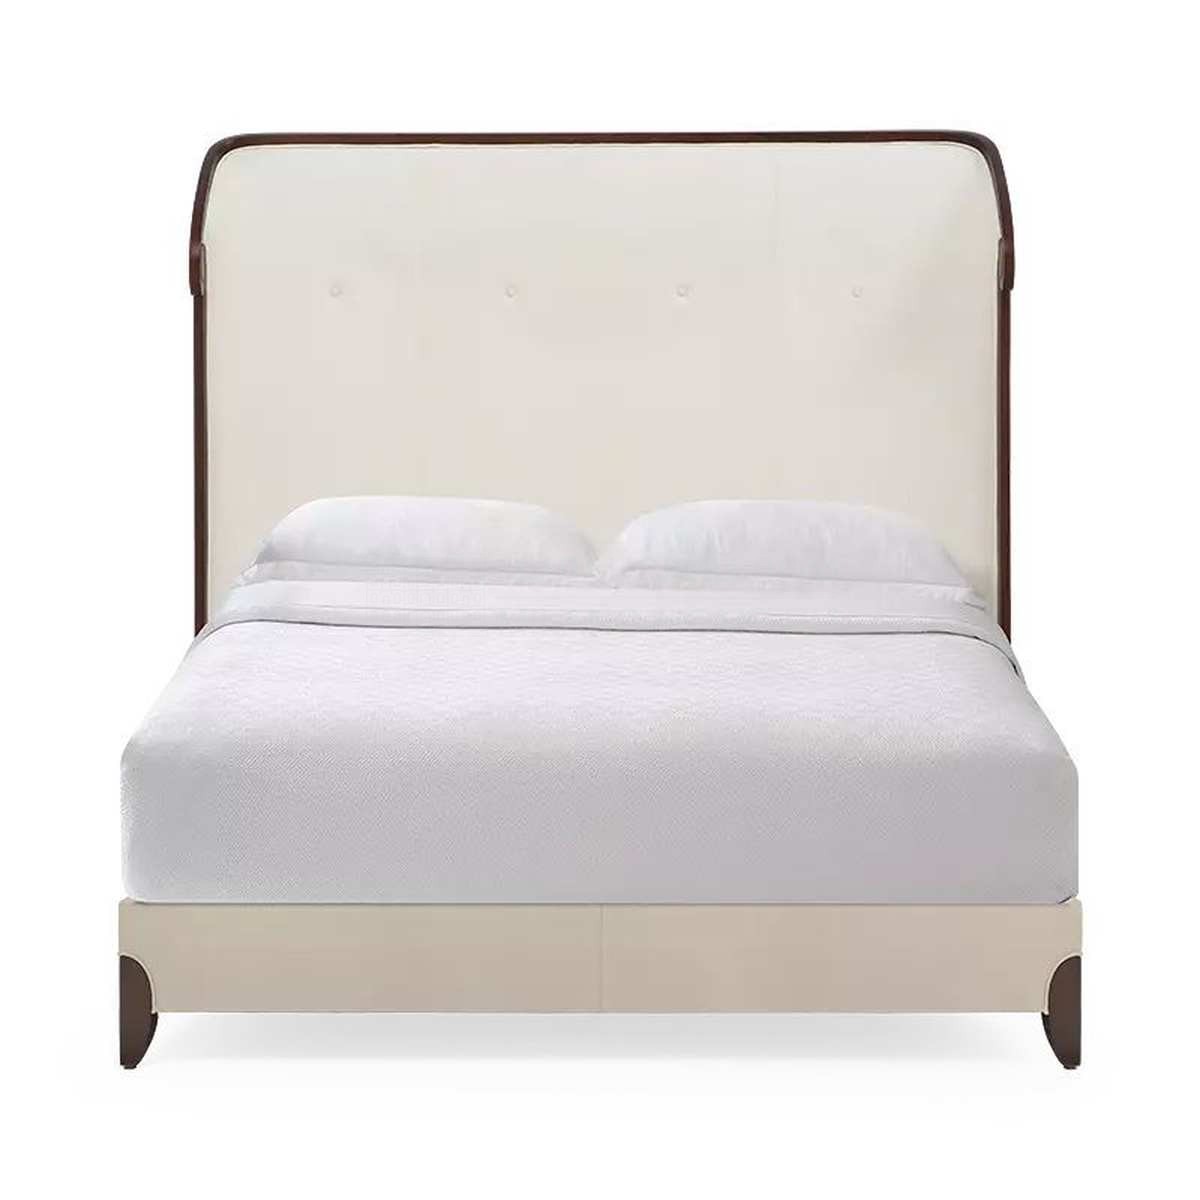 Двуспальная кровать Corinthia bed  из США фабрики CHRISTOPHER GUY